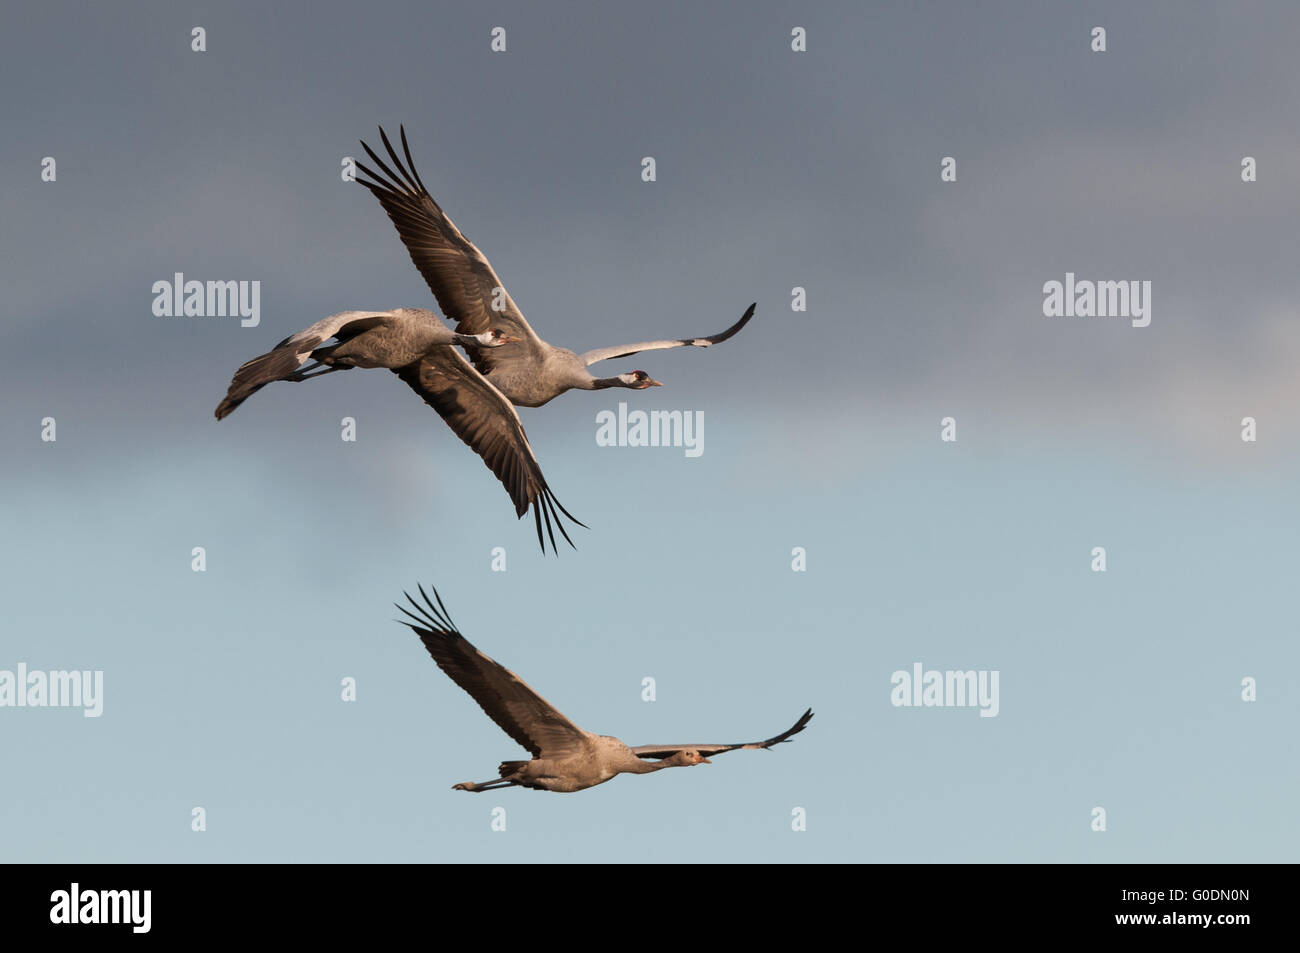 Common cranes in Germany Stock Photo